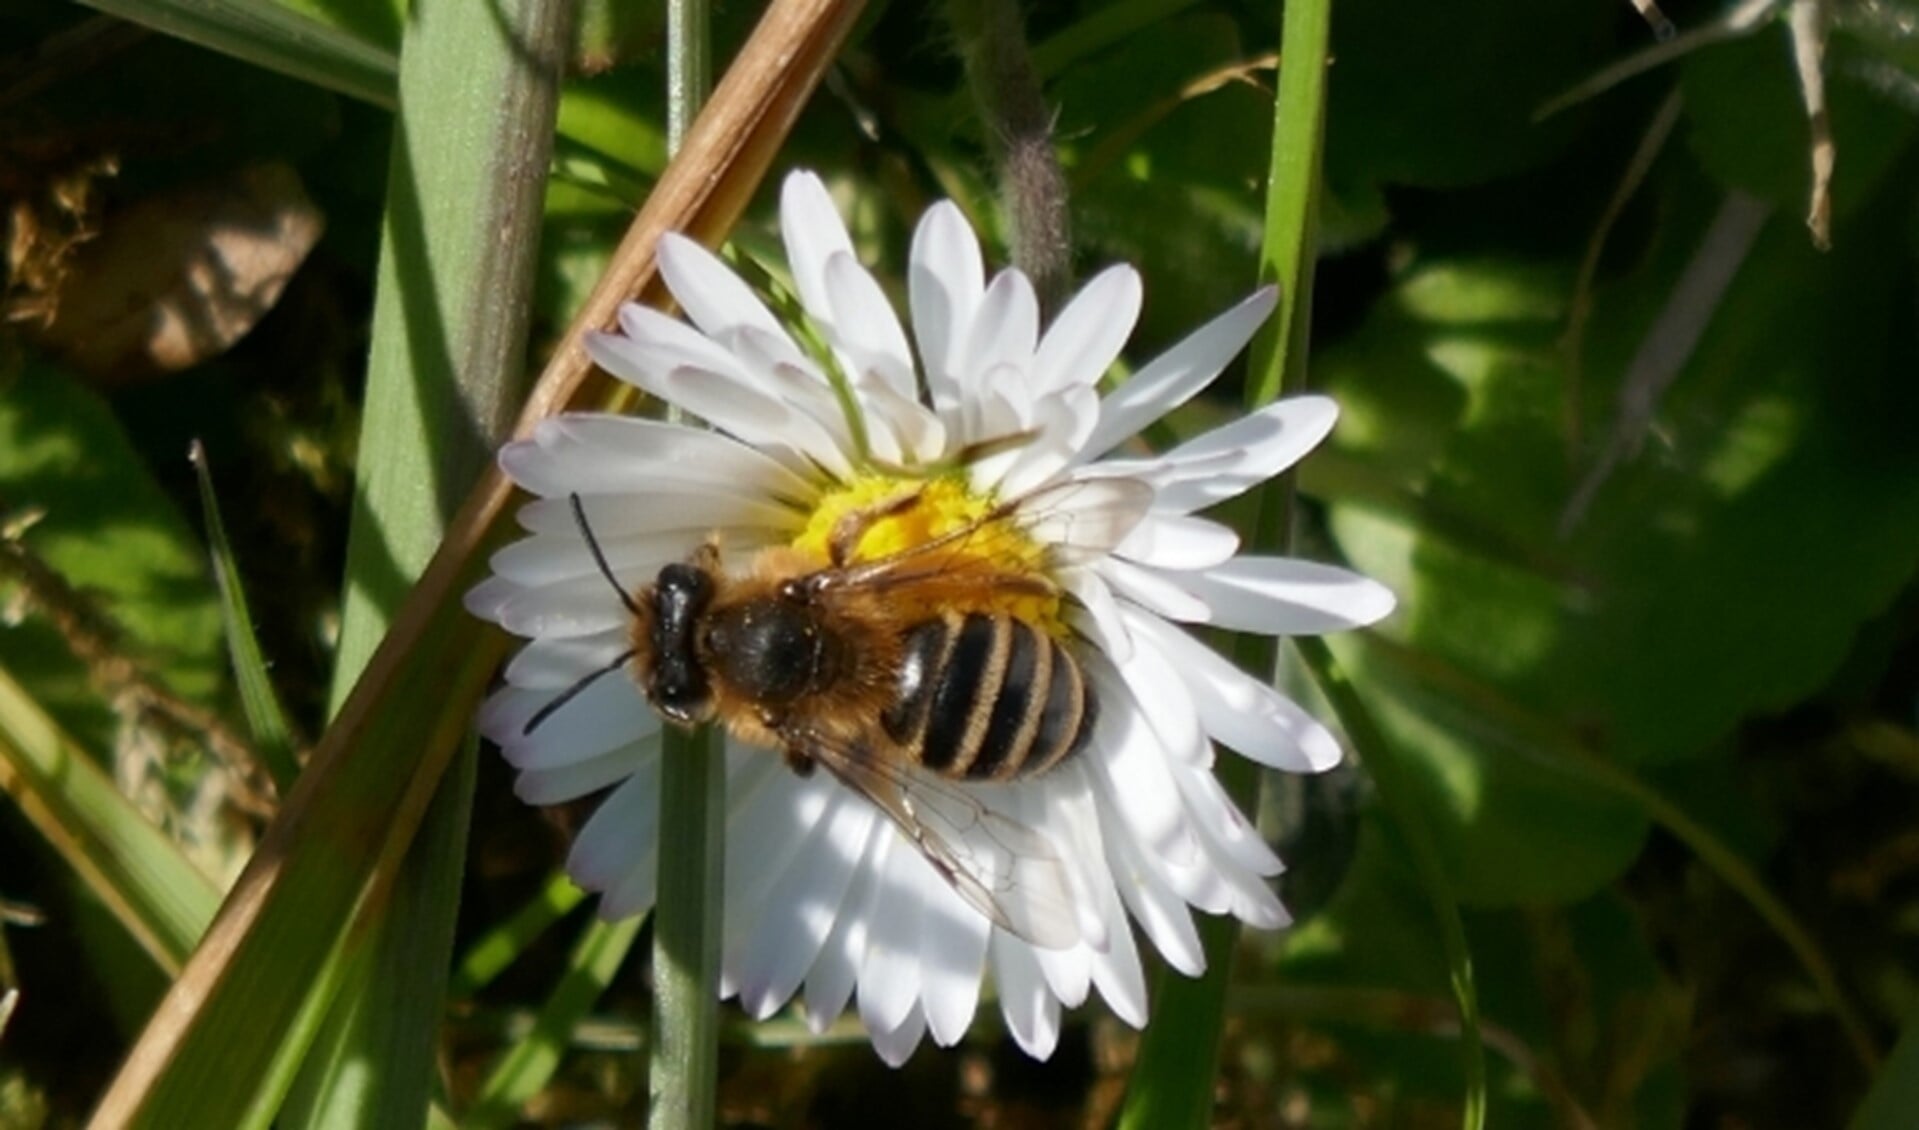 Uw tuin bijvriendelijker maken? Doe mee aan de actie van Bee Friendly. U kunt een gratis zakje zaad met wilde bloemen aanvragen. Kijk eens op www.kro-ncrv.nl/beefriendly. Foto: Grasbij op madeliefje. Fotograaf: Tilly Kester.